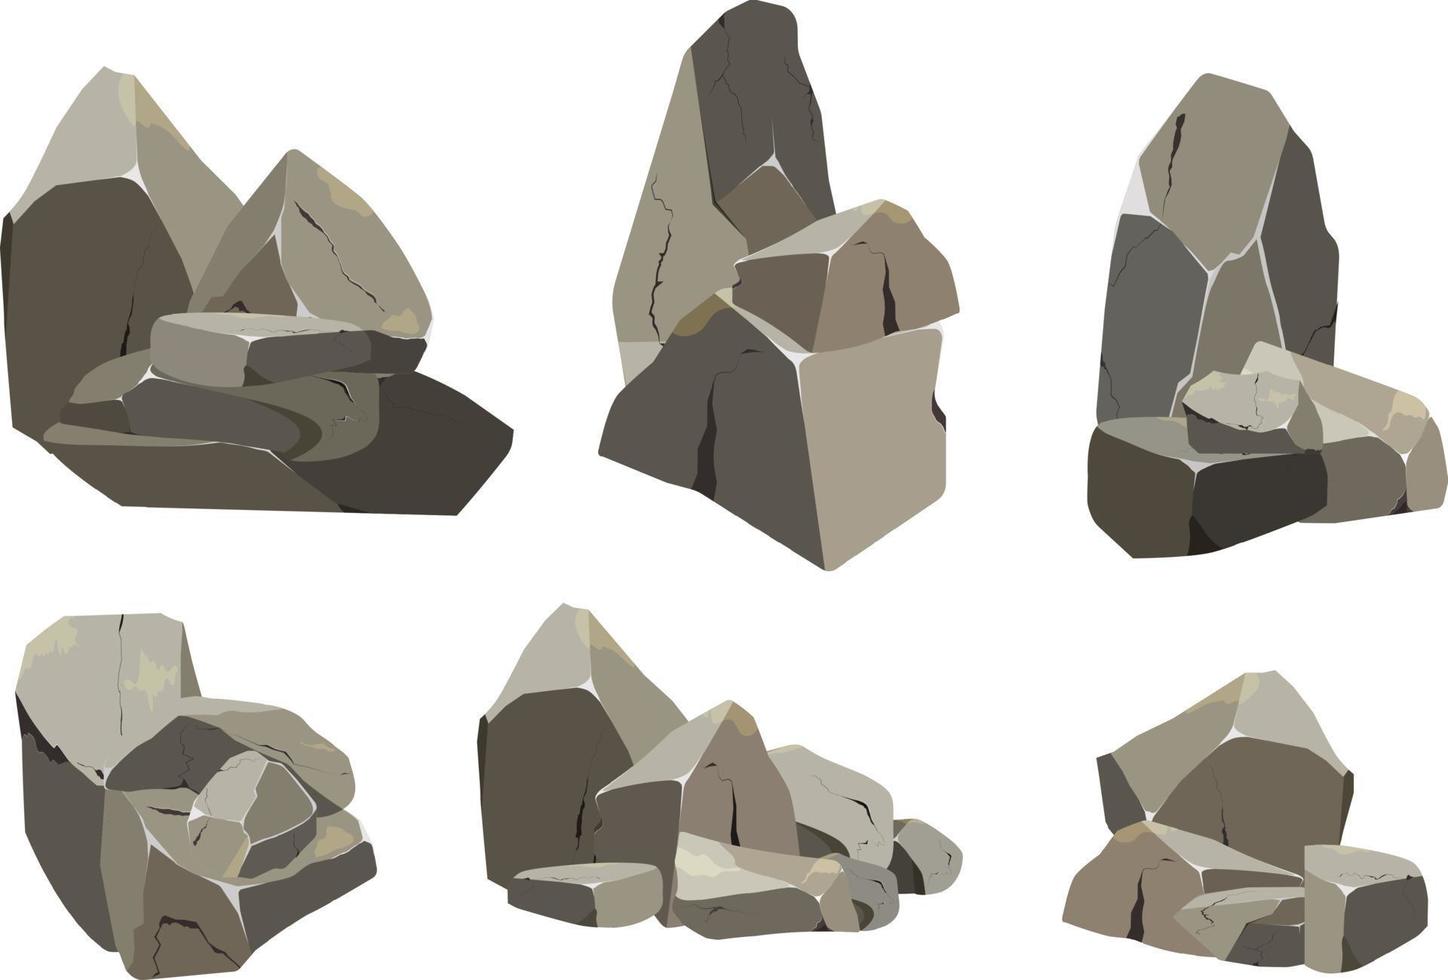 coleção de pedras de várias formas e arbustos.seixos costeiros,pedregulhos,cascalho,minerais e formações geológicas.fragmentos de rocha,pedregulhos e material de construção. vetor